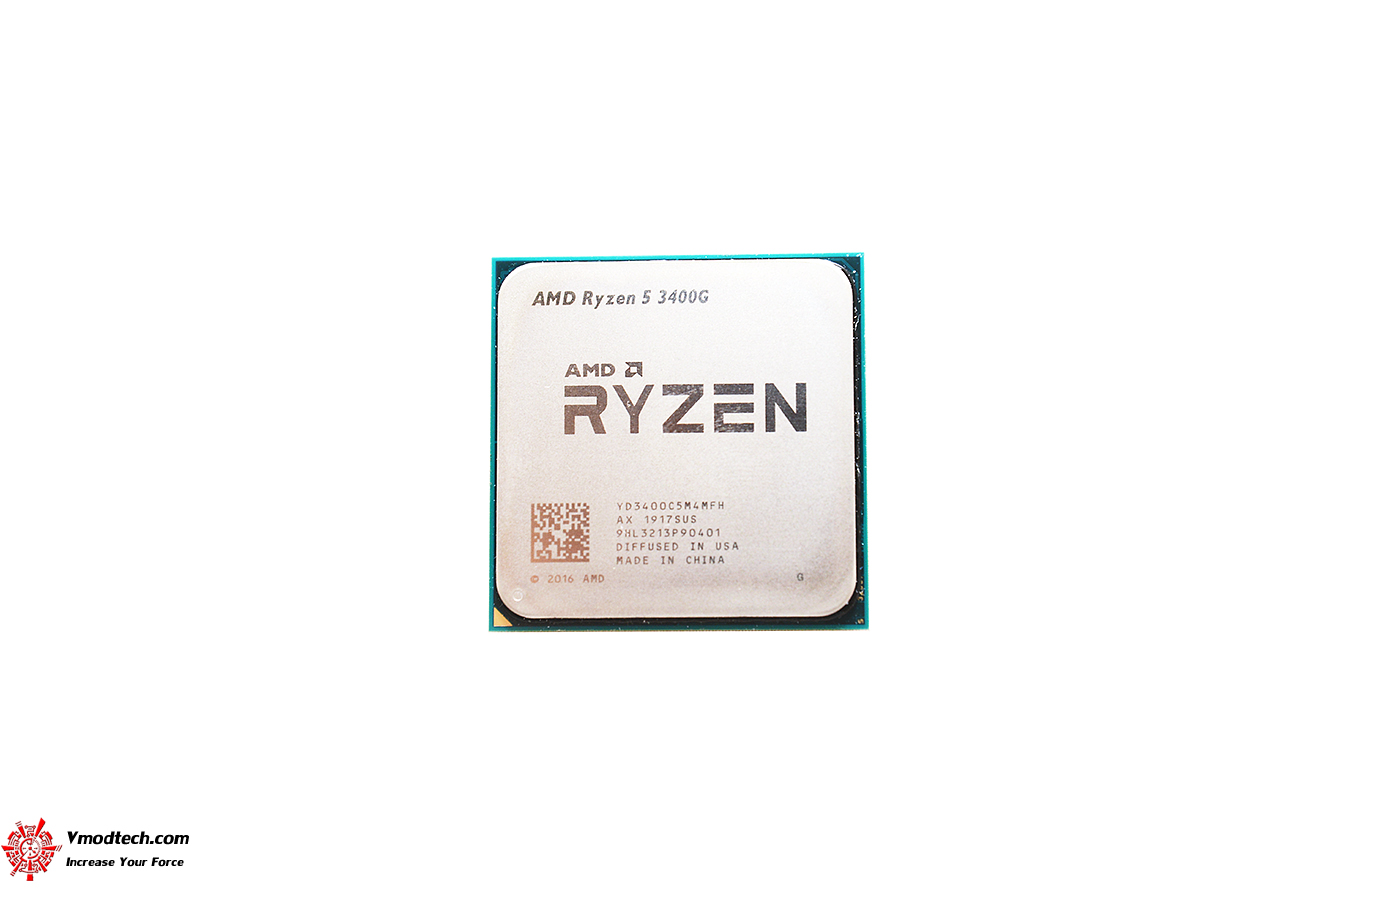 dsc 6641 AMD RYZEN 5 3400G PROCESSOR REVIEW 